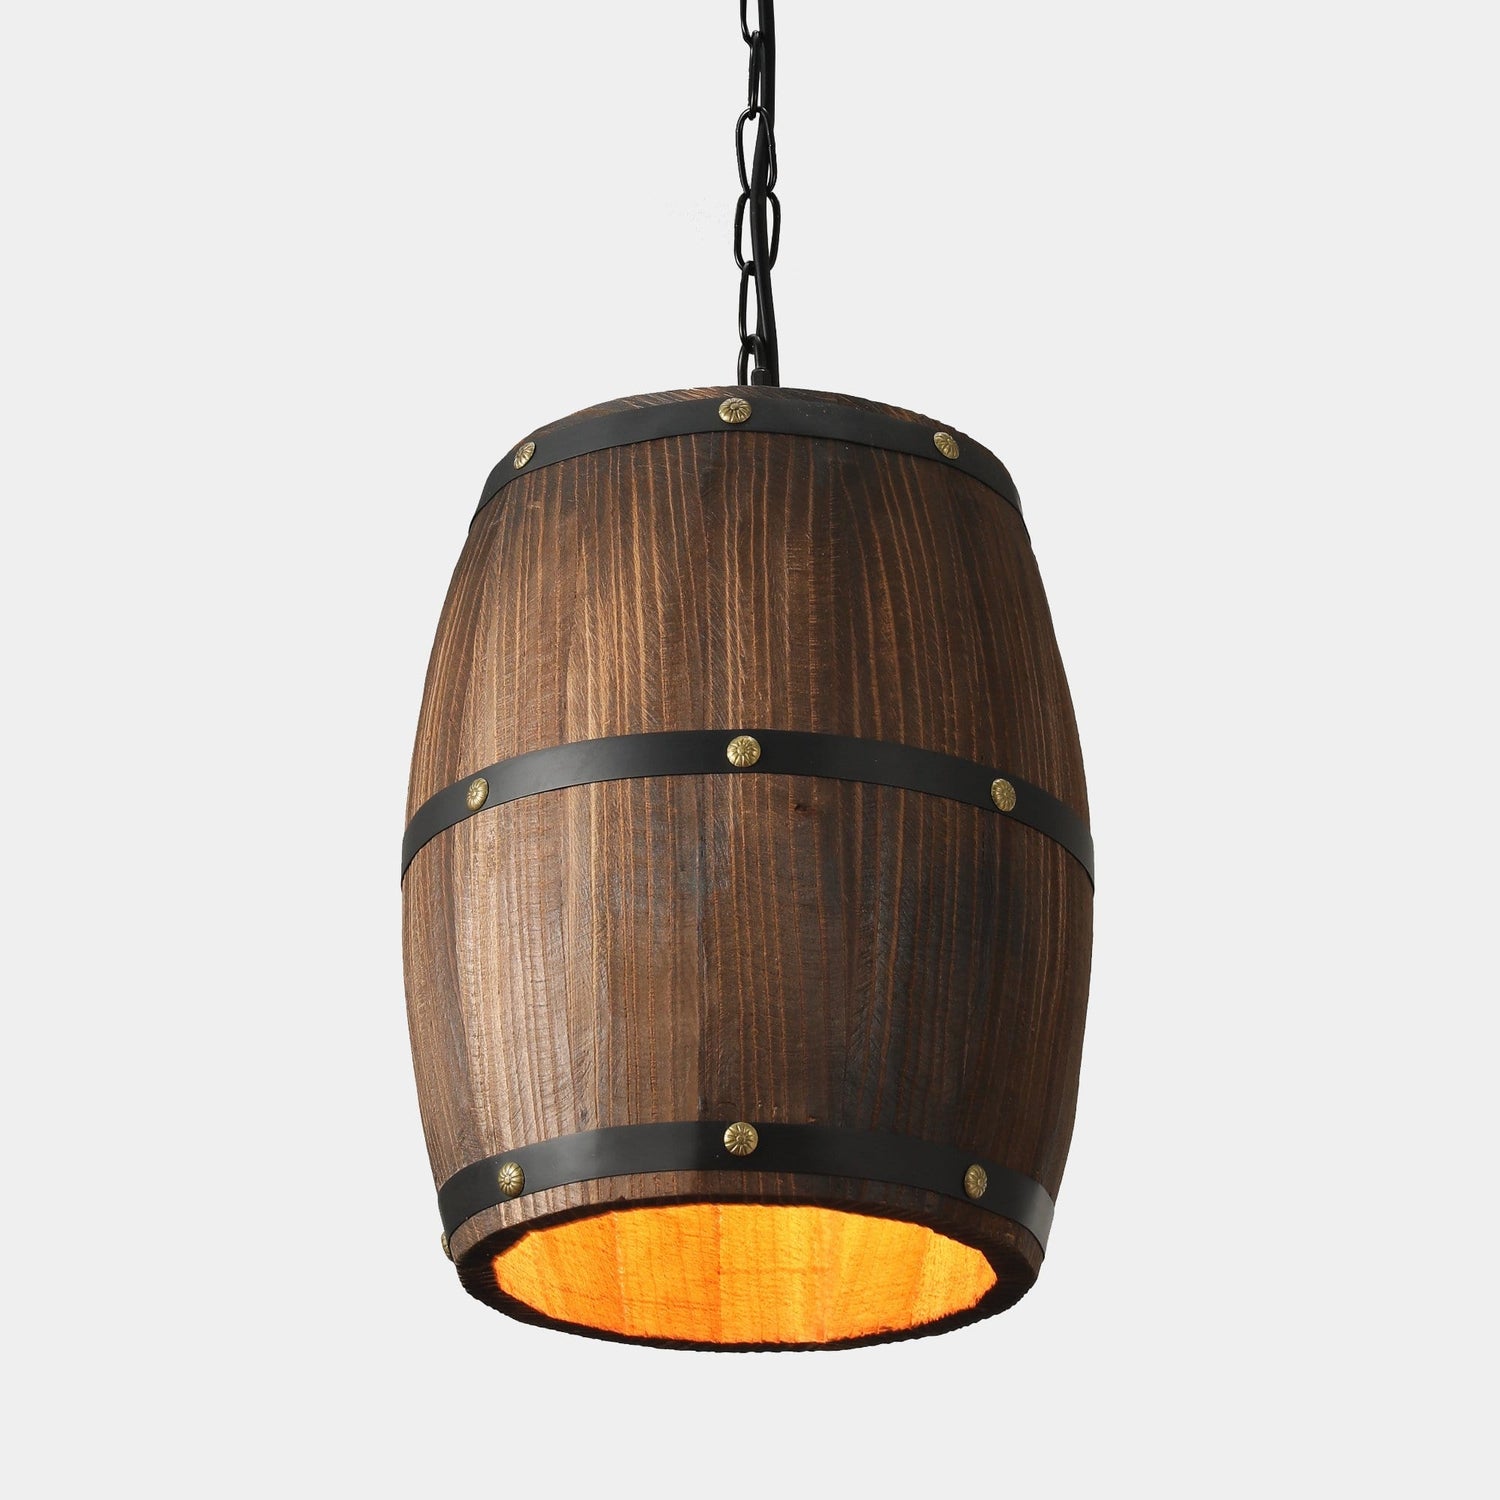 Industrial Wood Barrel Pendant Light - 1 Piece - Pendant 